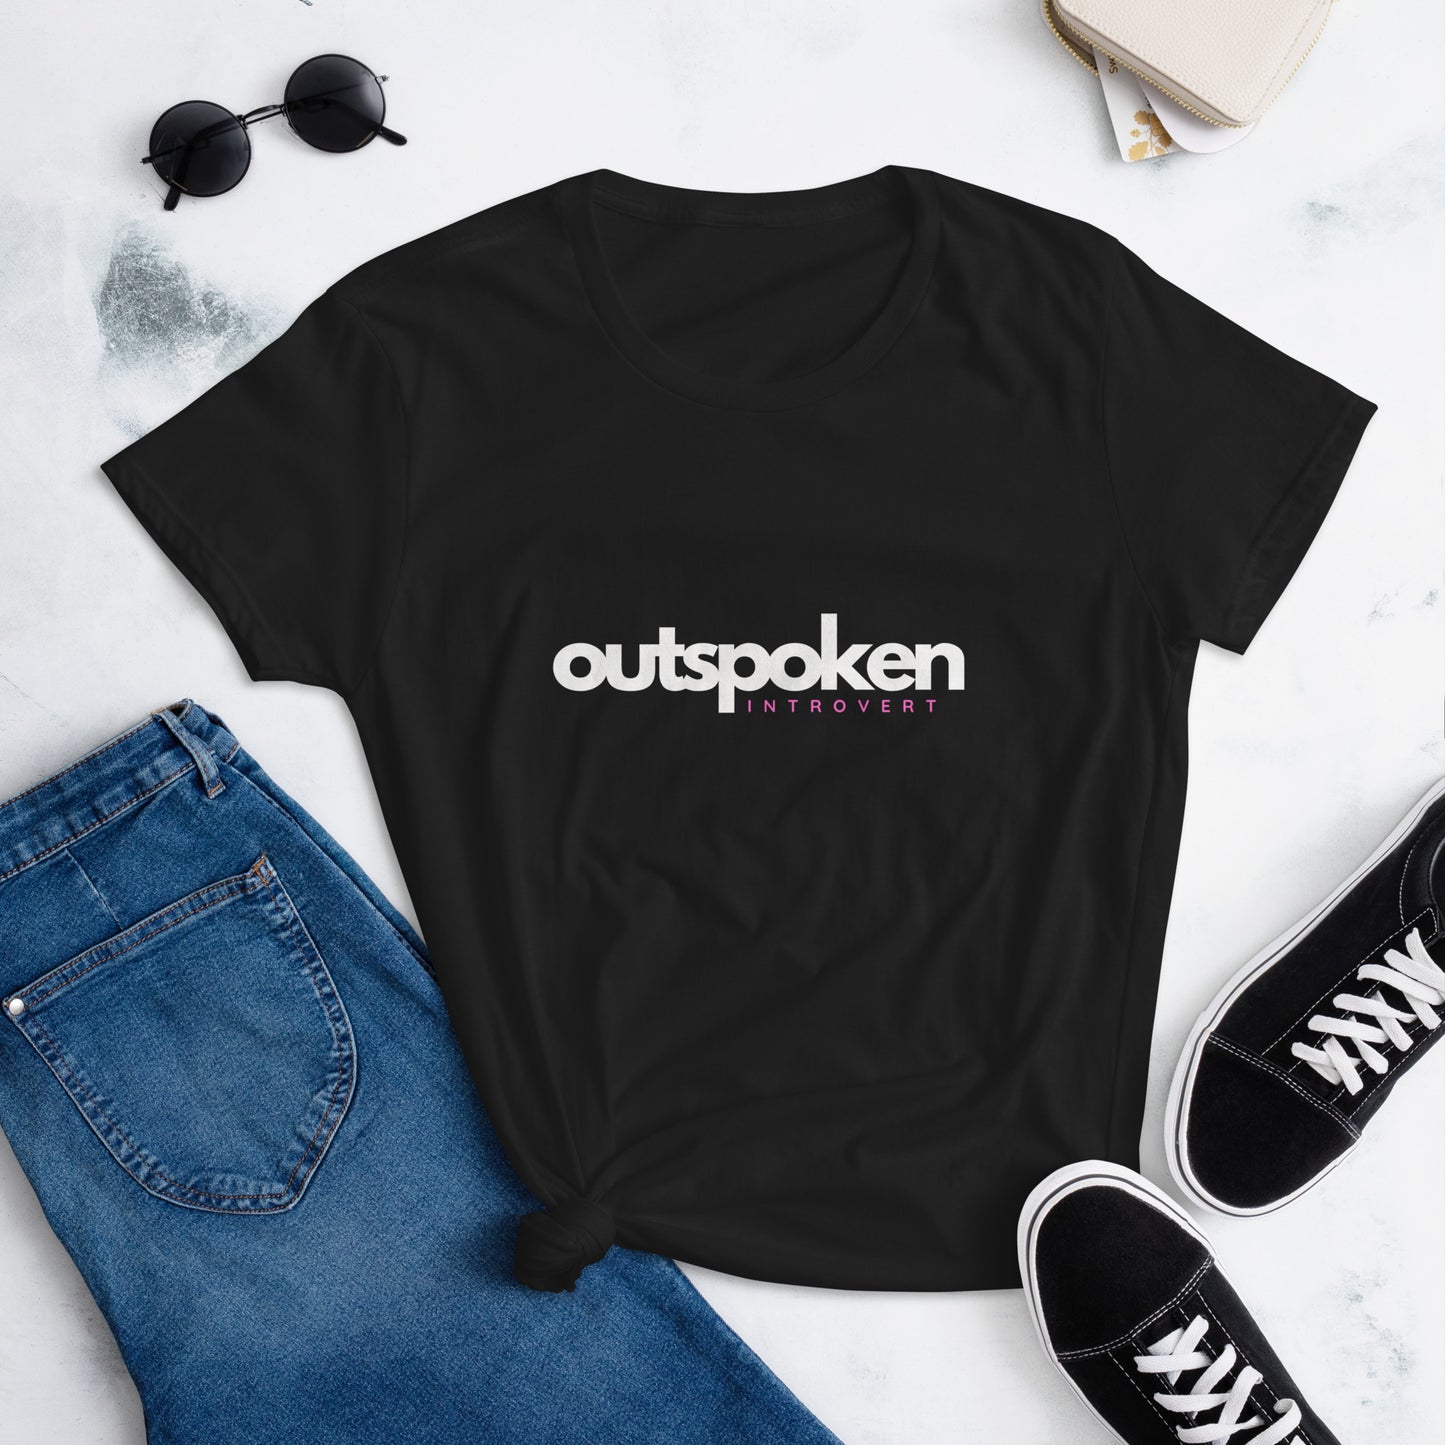 Outspoken Introvert Women's short sleeve t-shirt